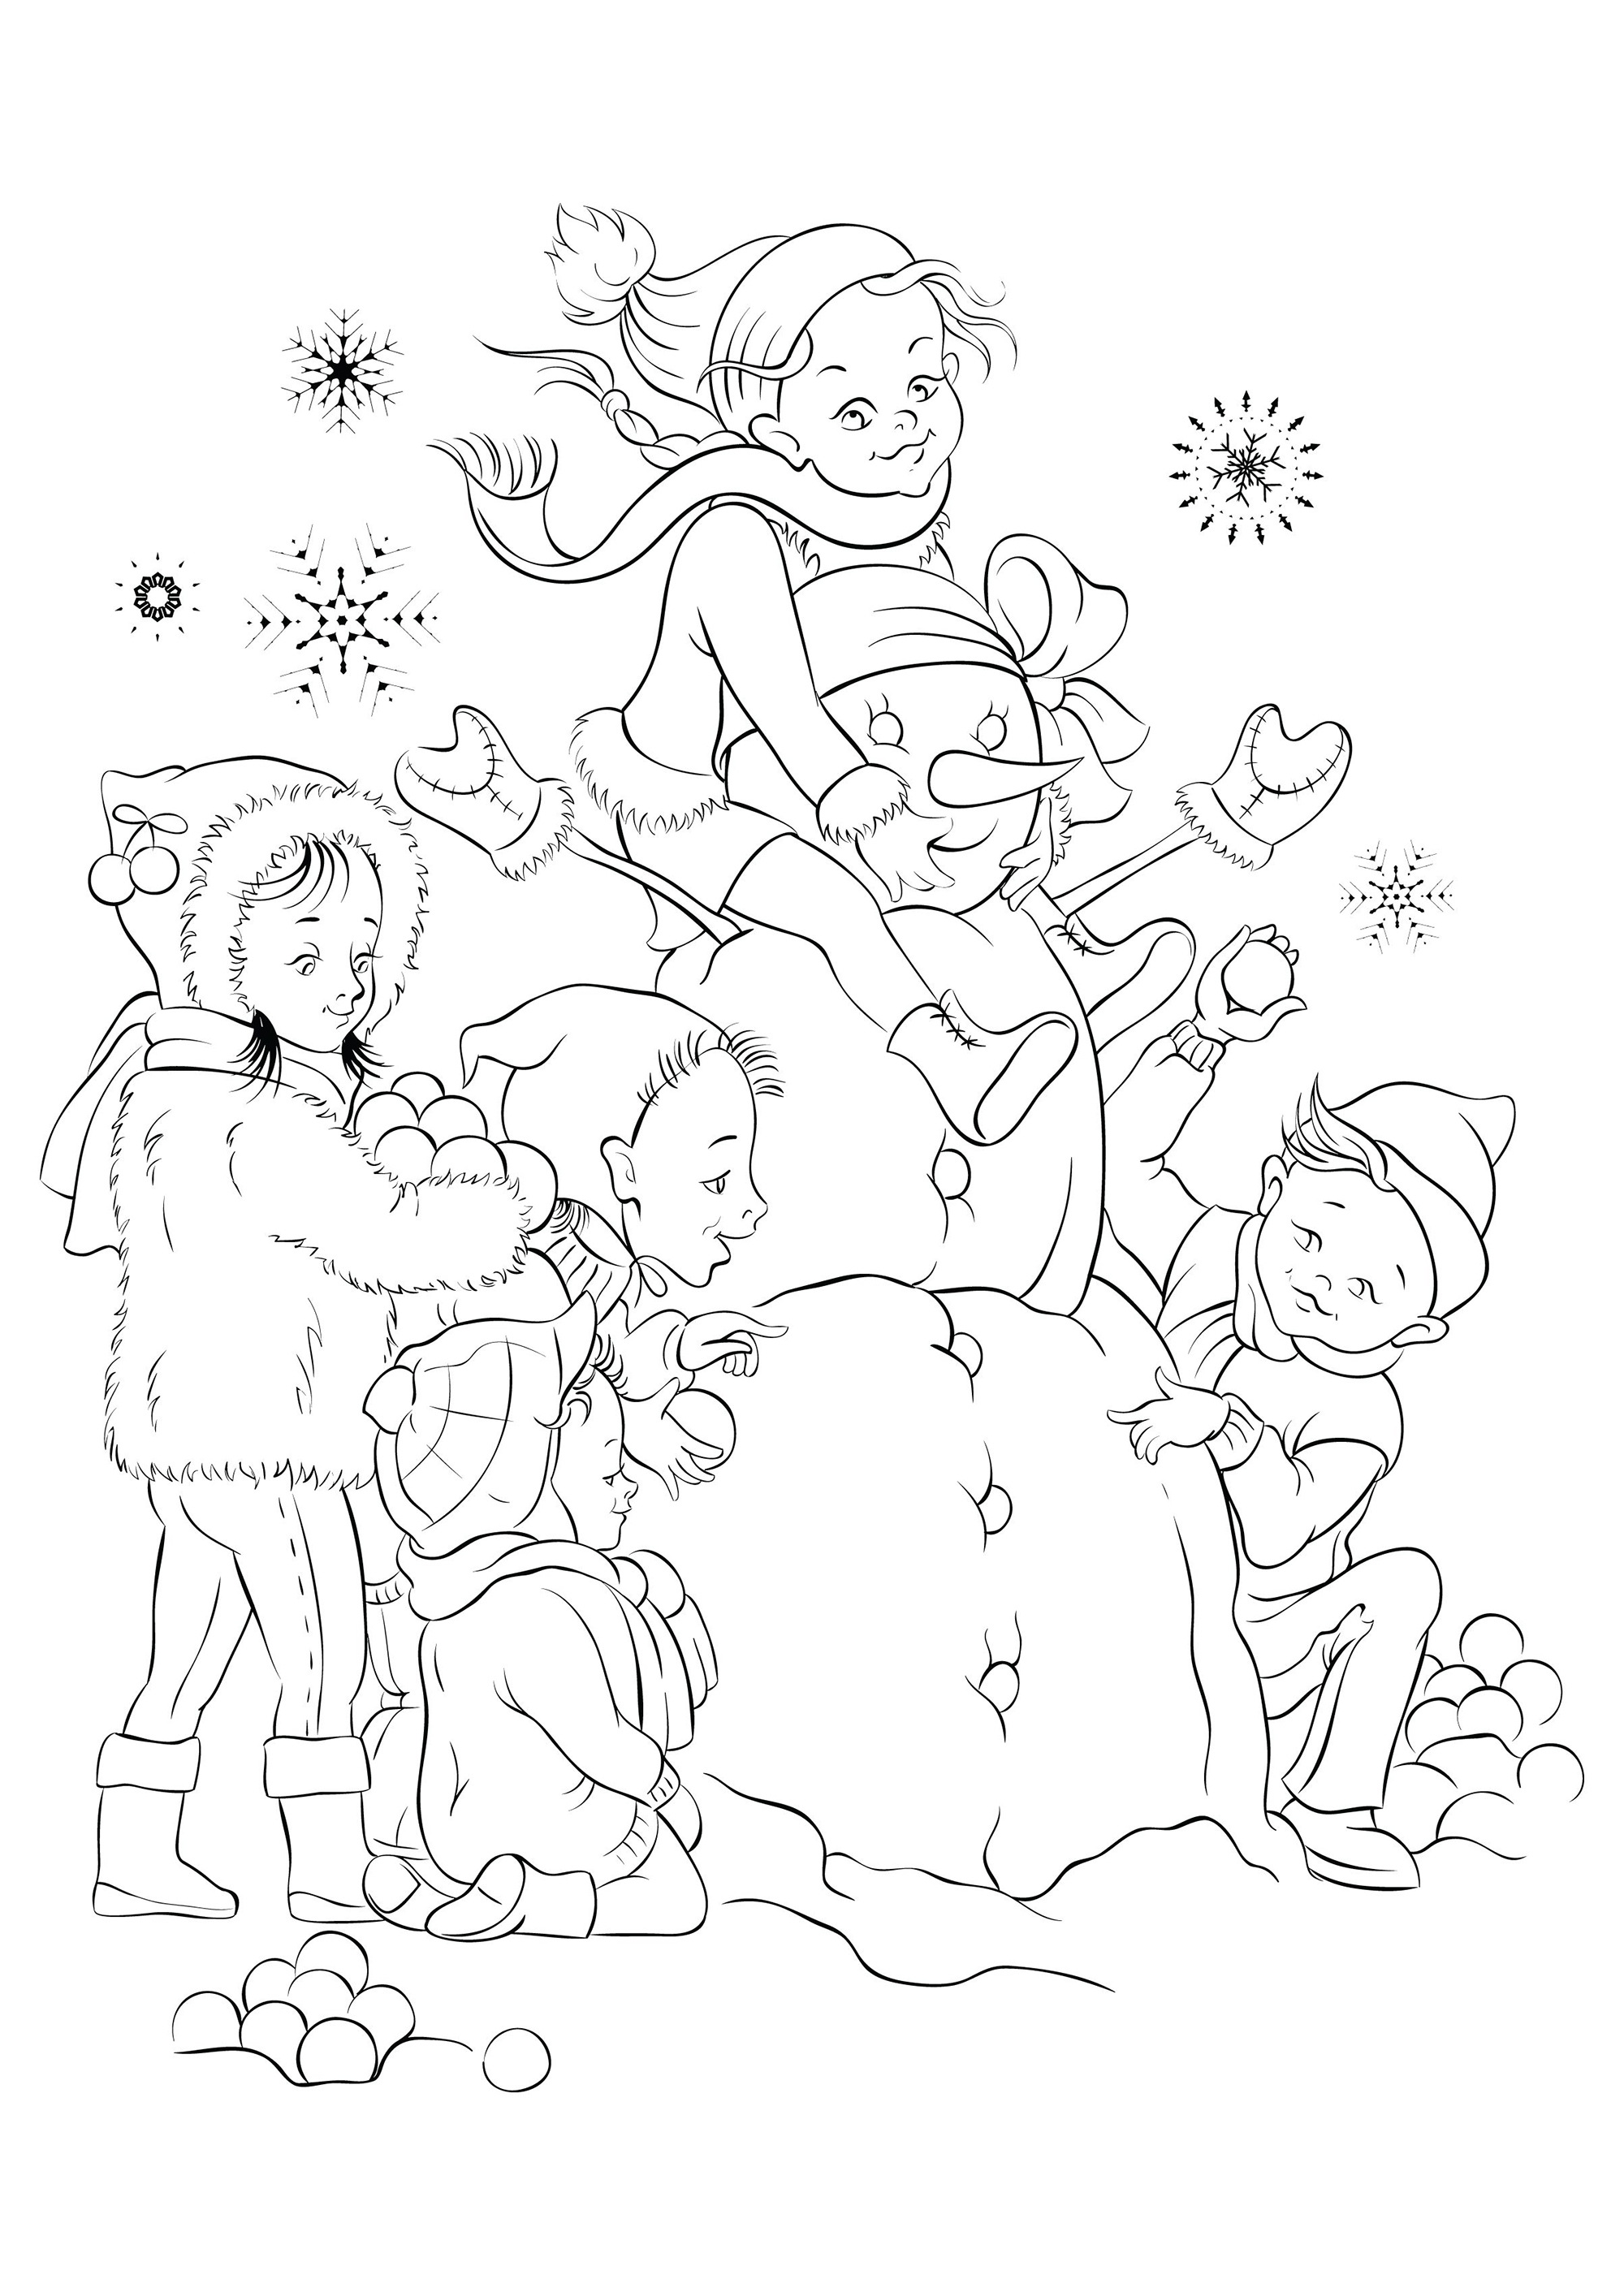 Enfants et le bonhomme de neige qu'ils ont réalisé tous ensemble, Source : 123rf   Artiste : regina555